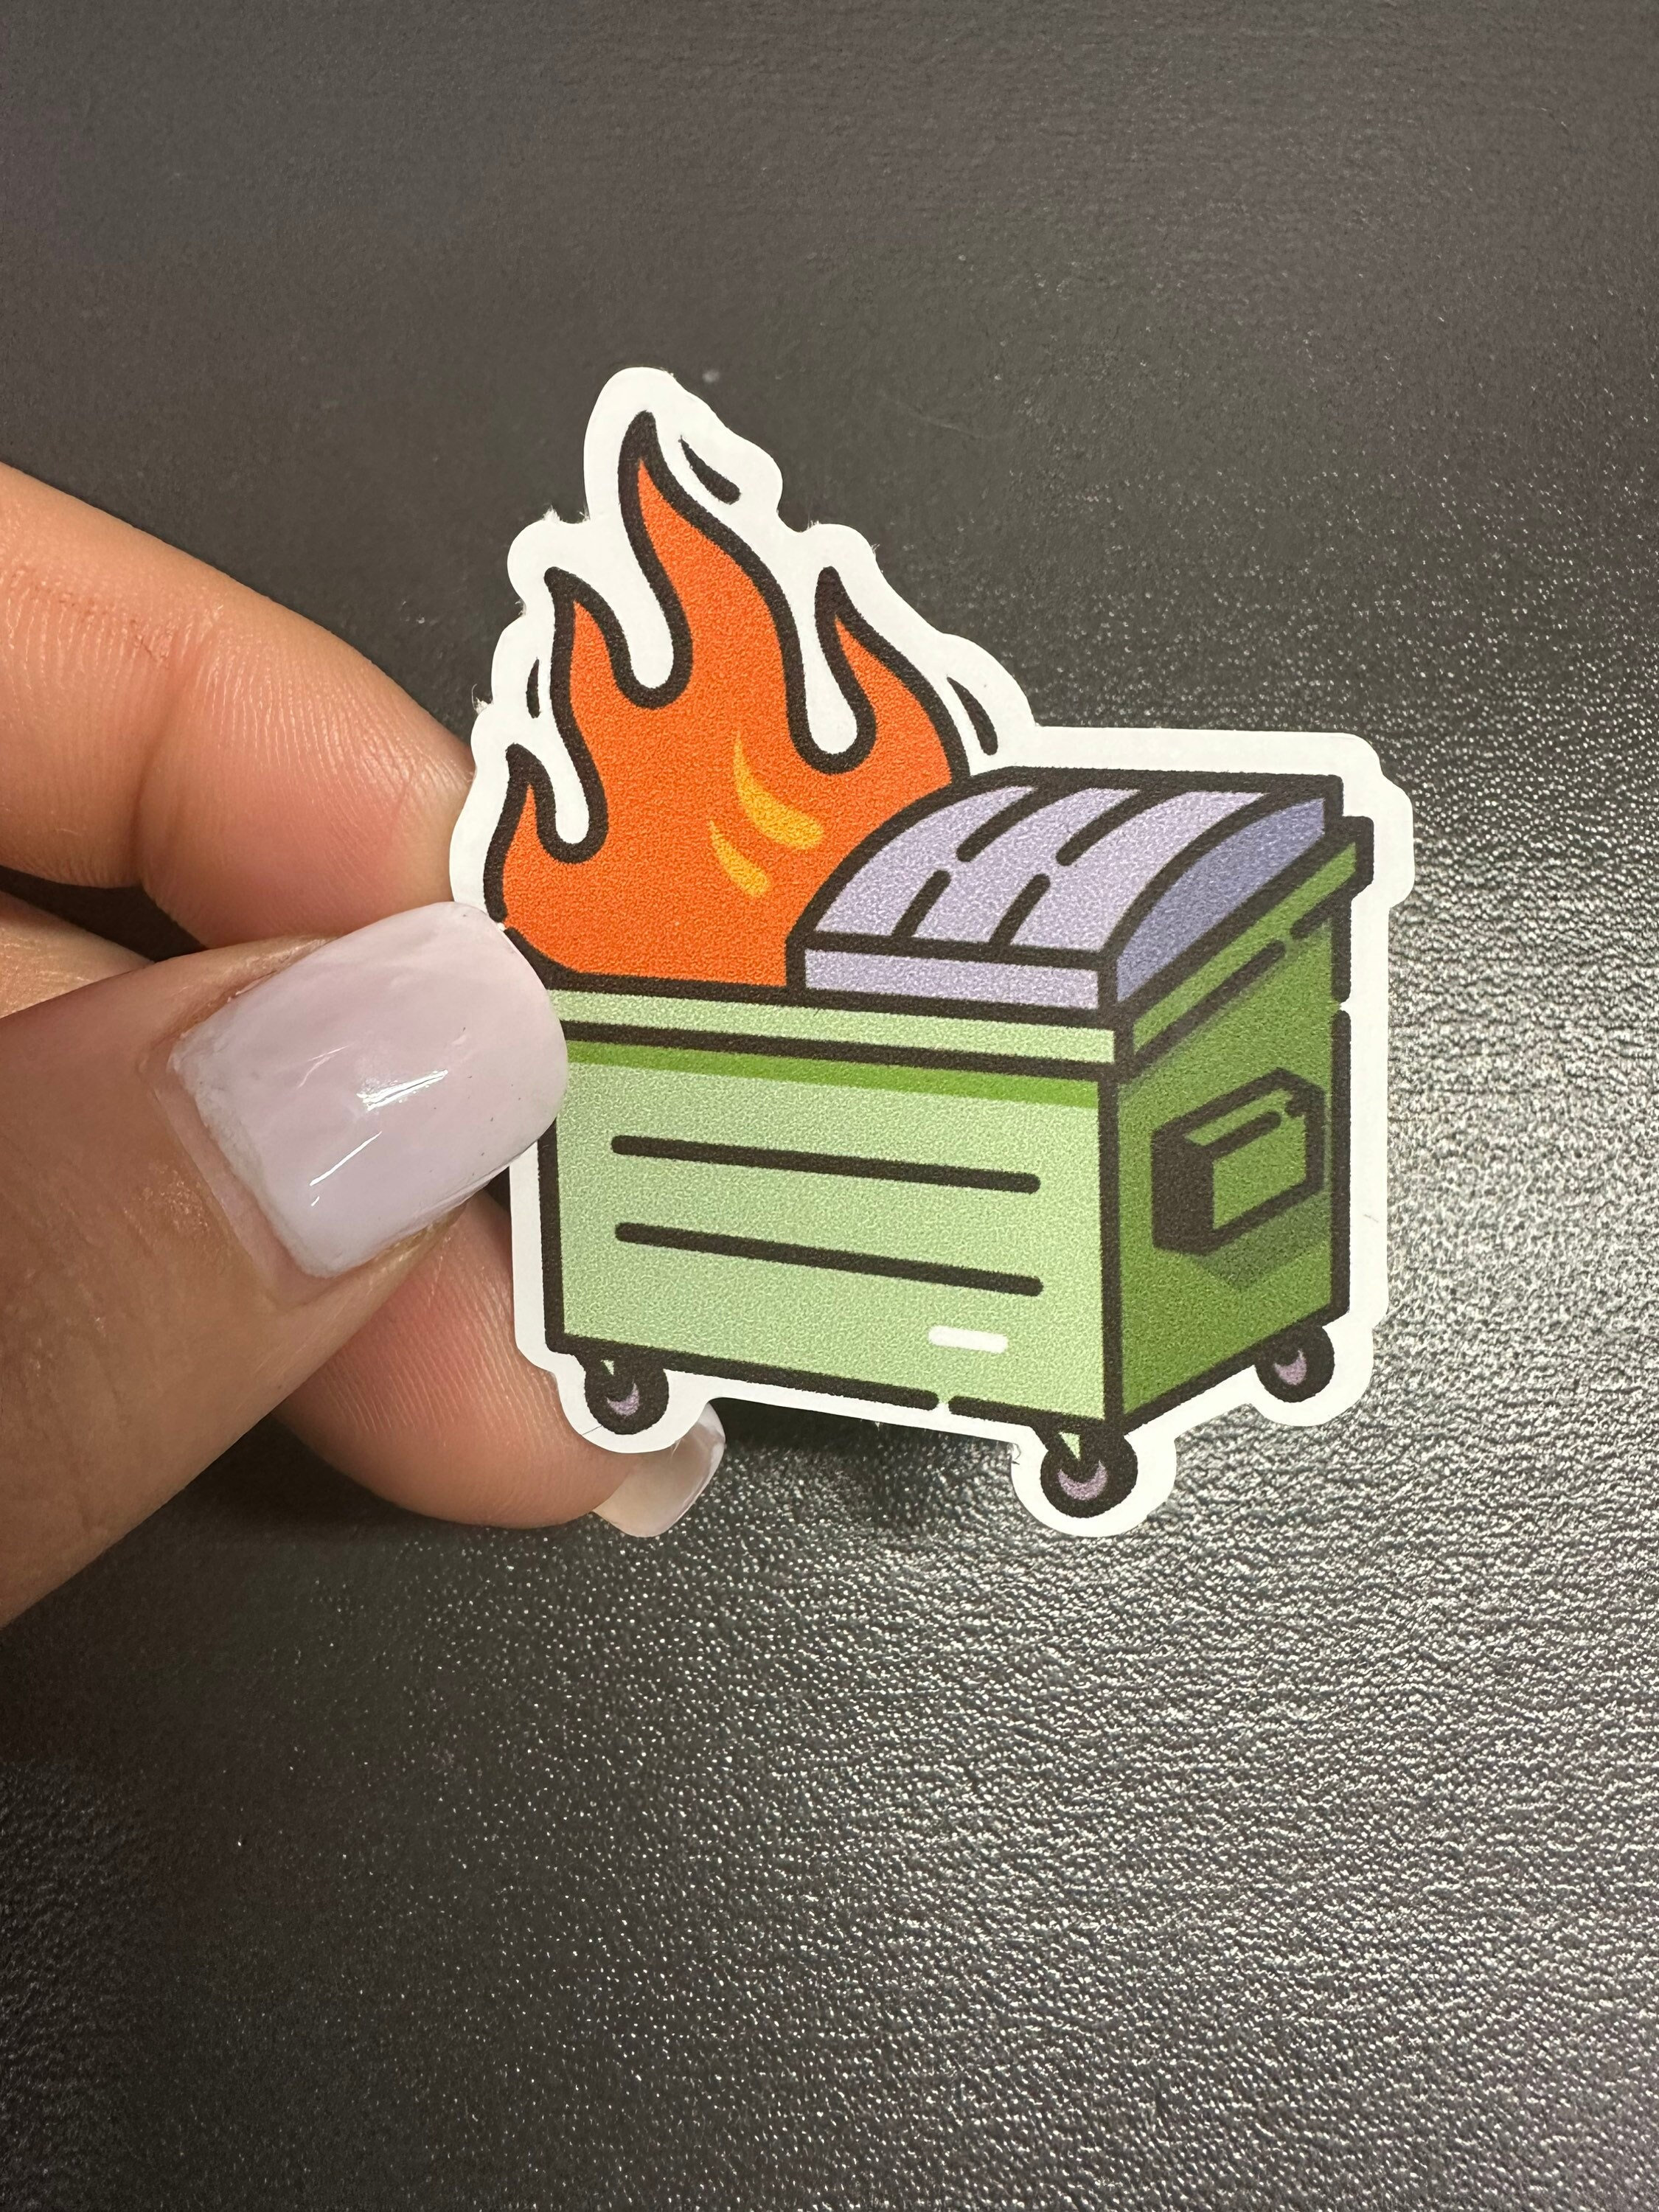 Dumpster Fire Sticker 